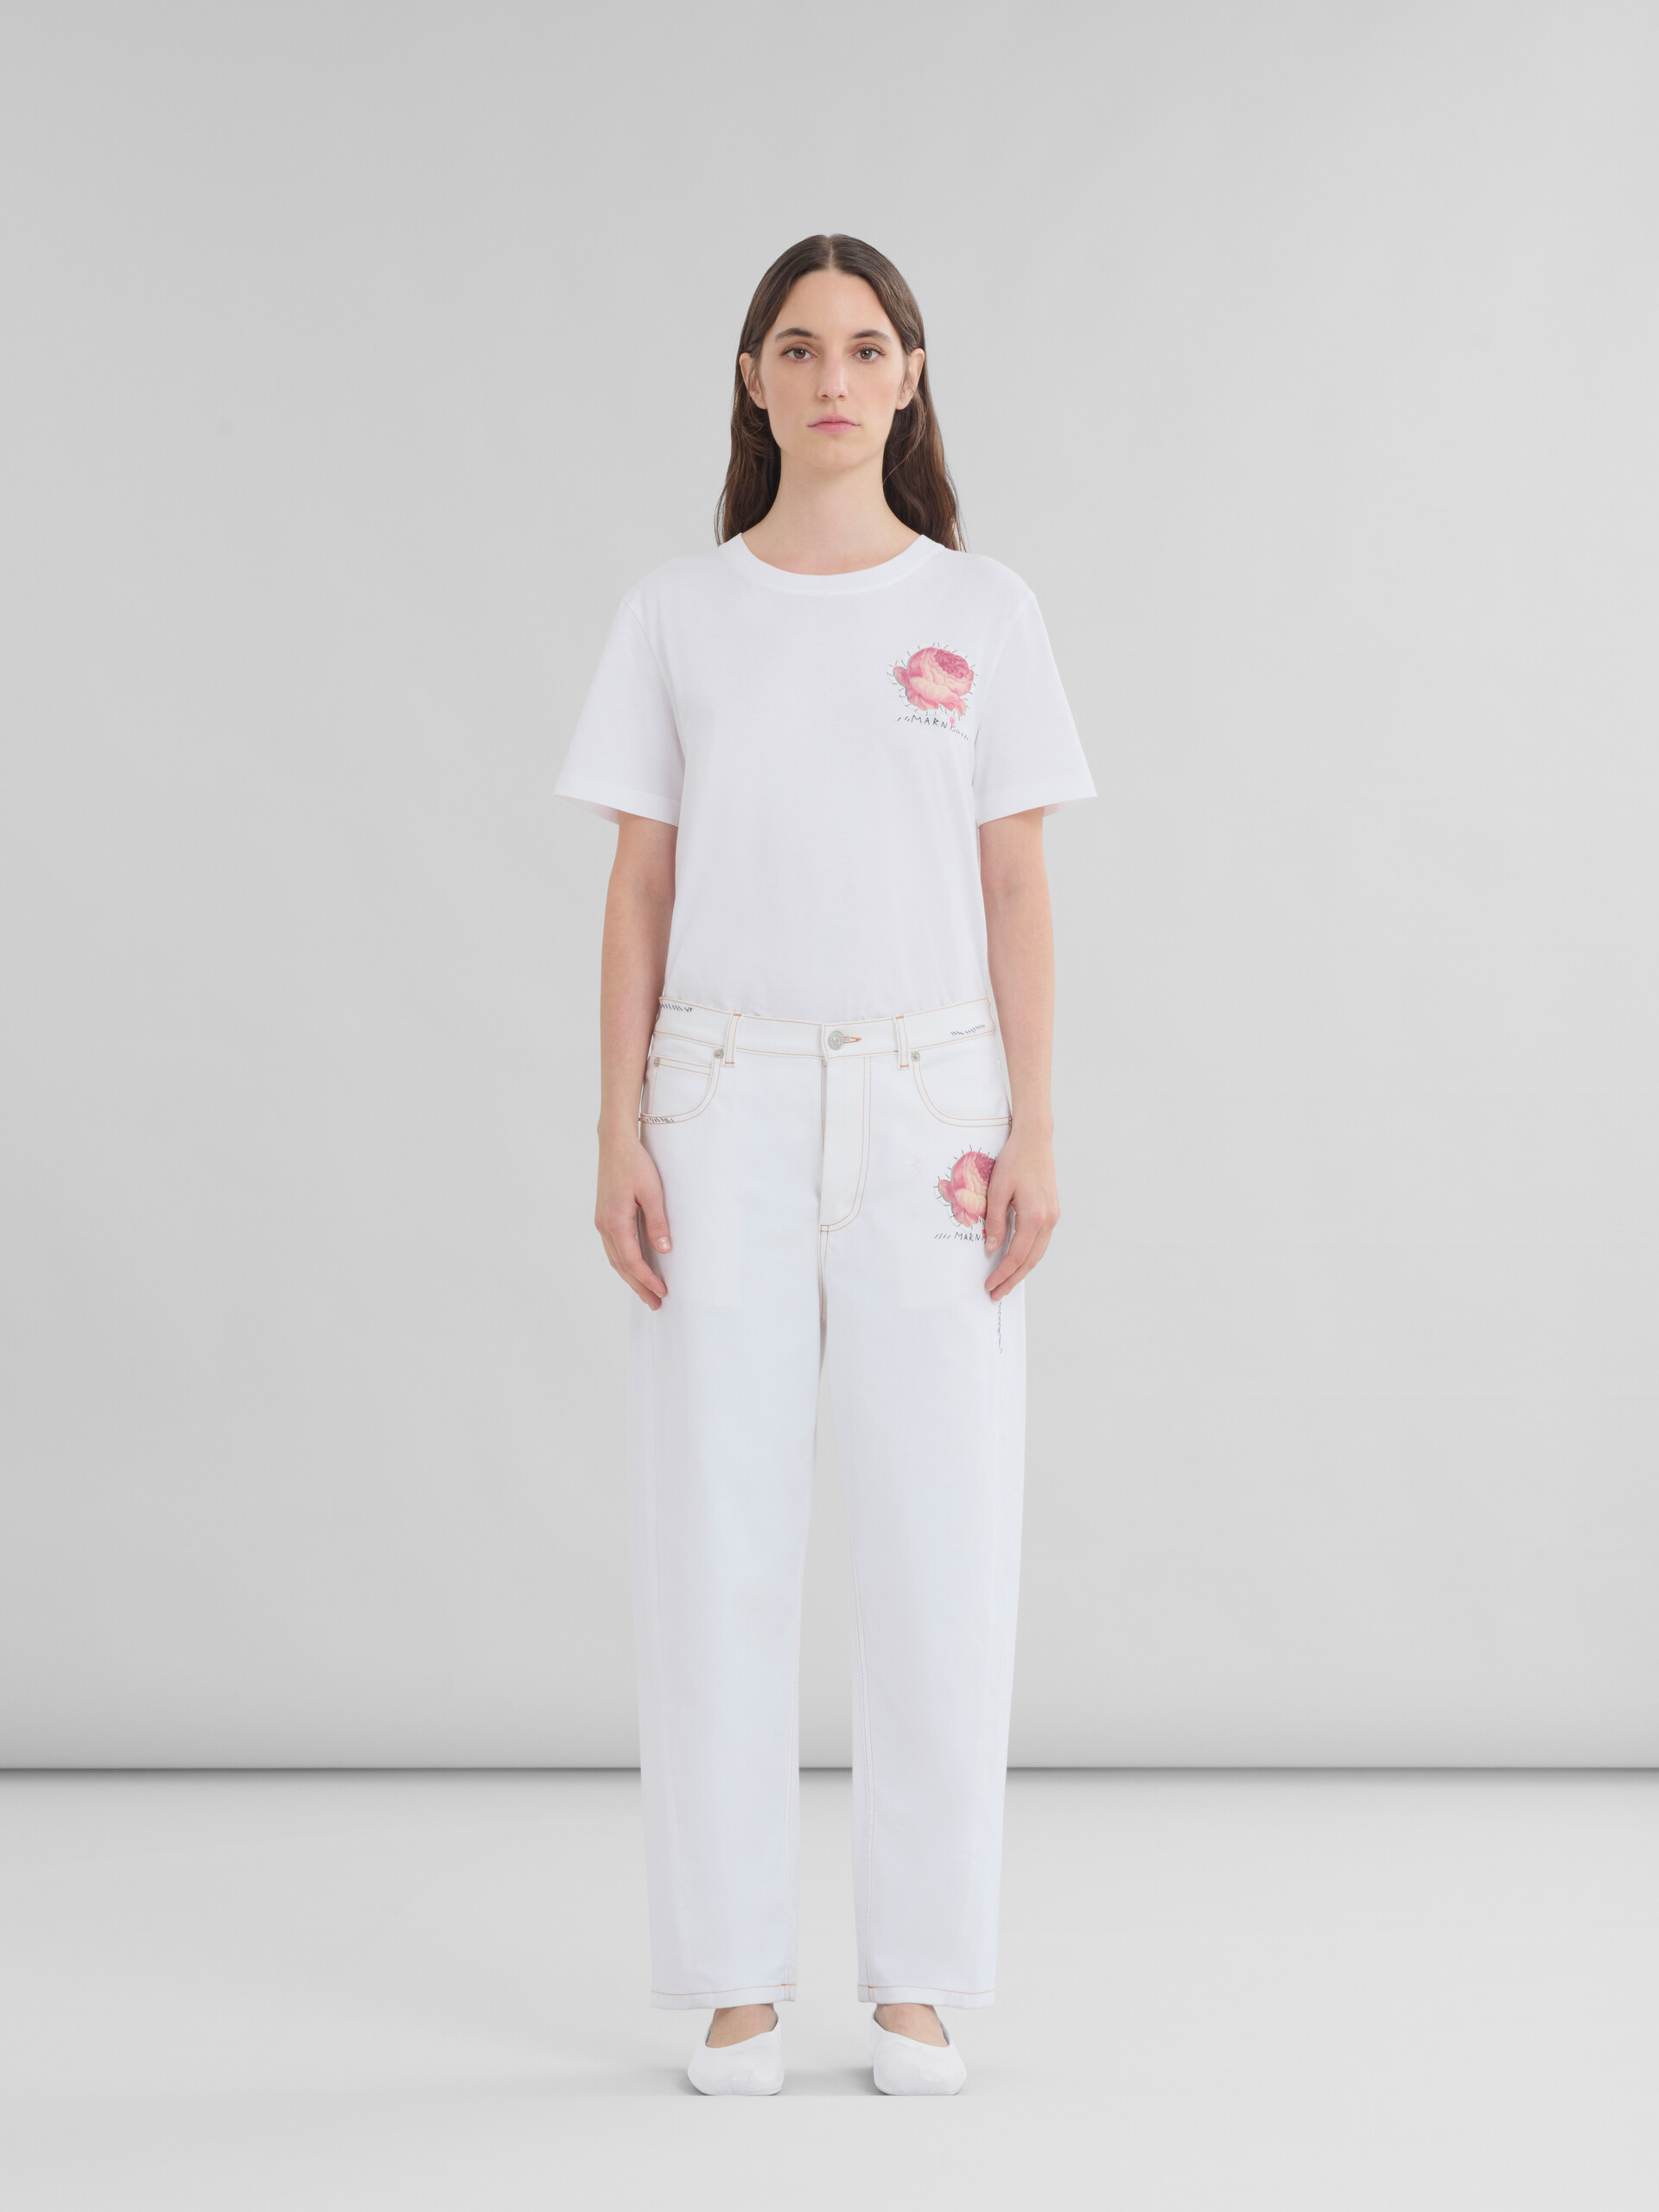 Pantalón de denim blanco con parches en forma de flor - Pantalones - Image 2